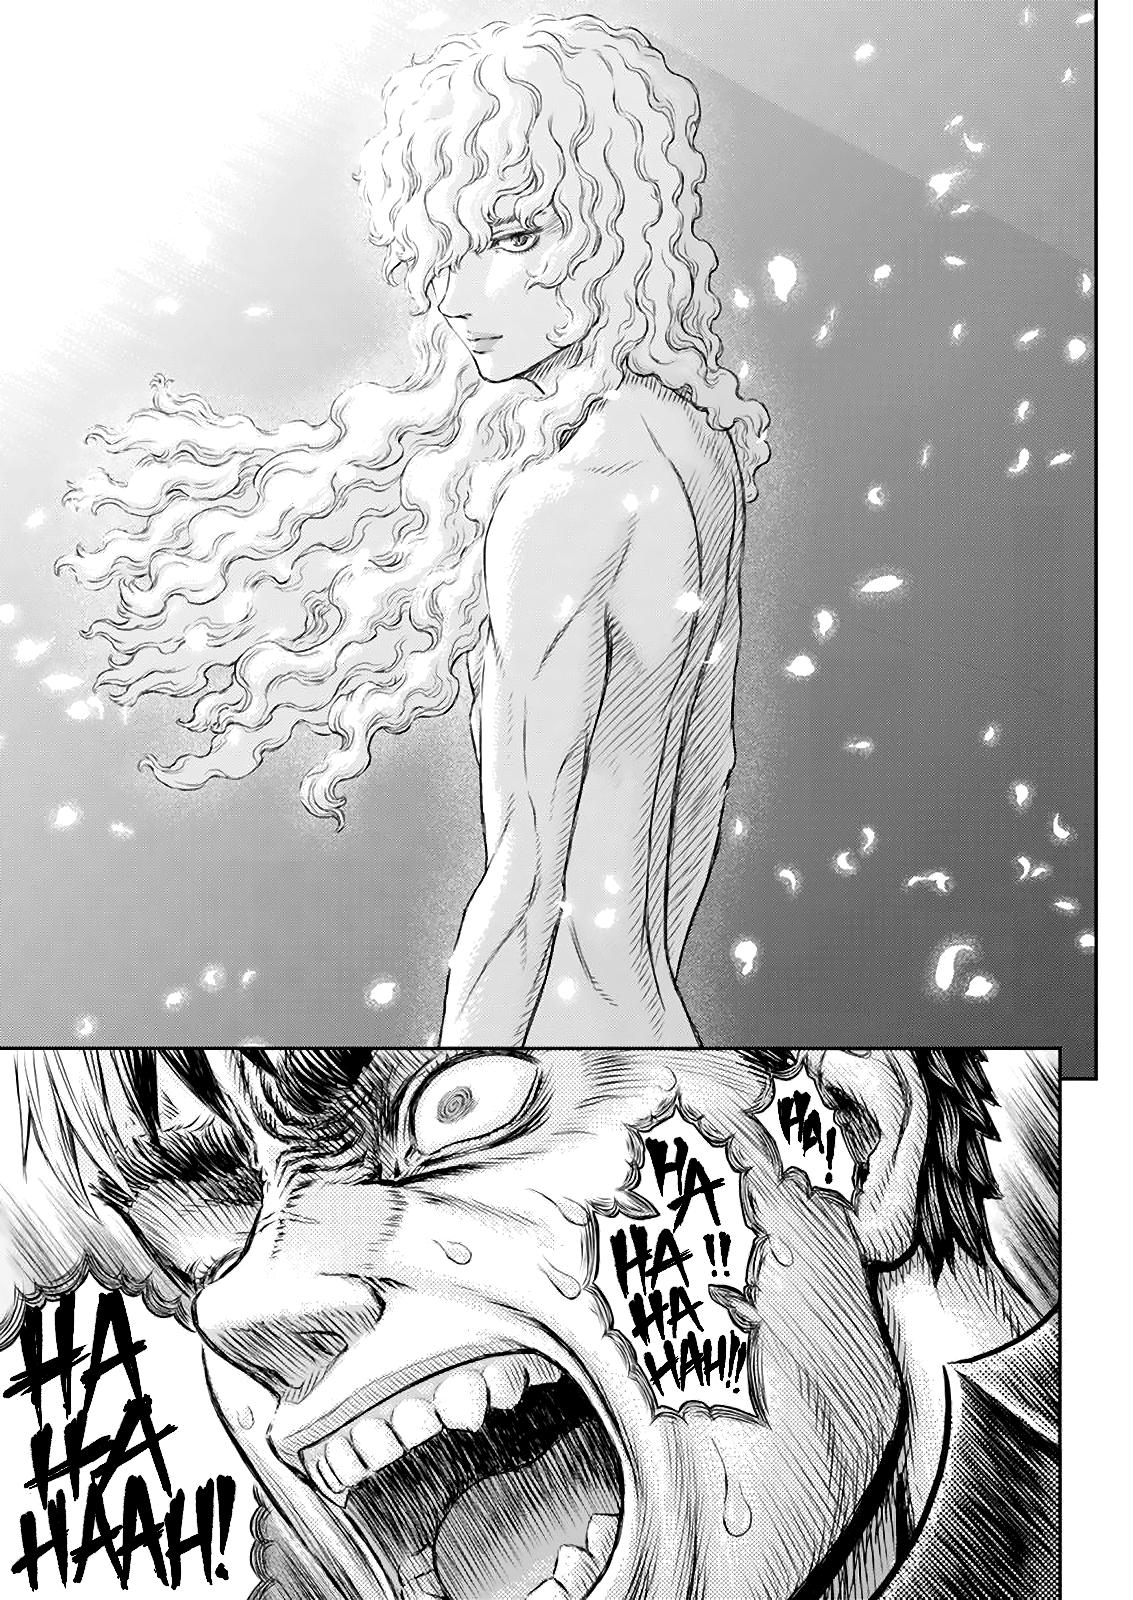 Berserk Manga Chapter 366 image 05